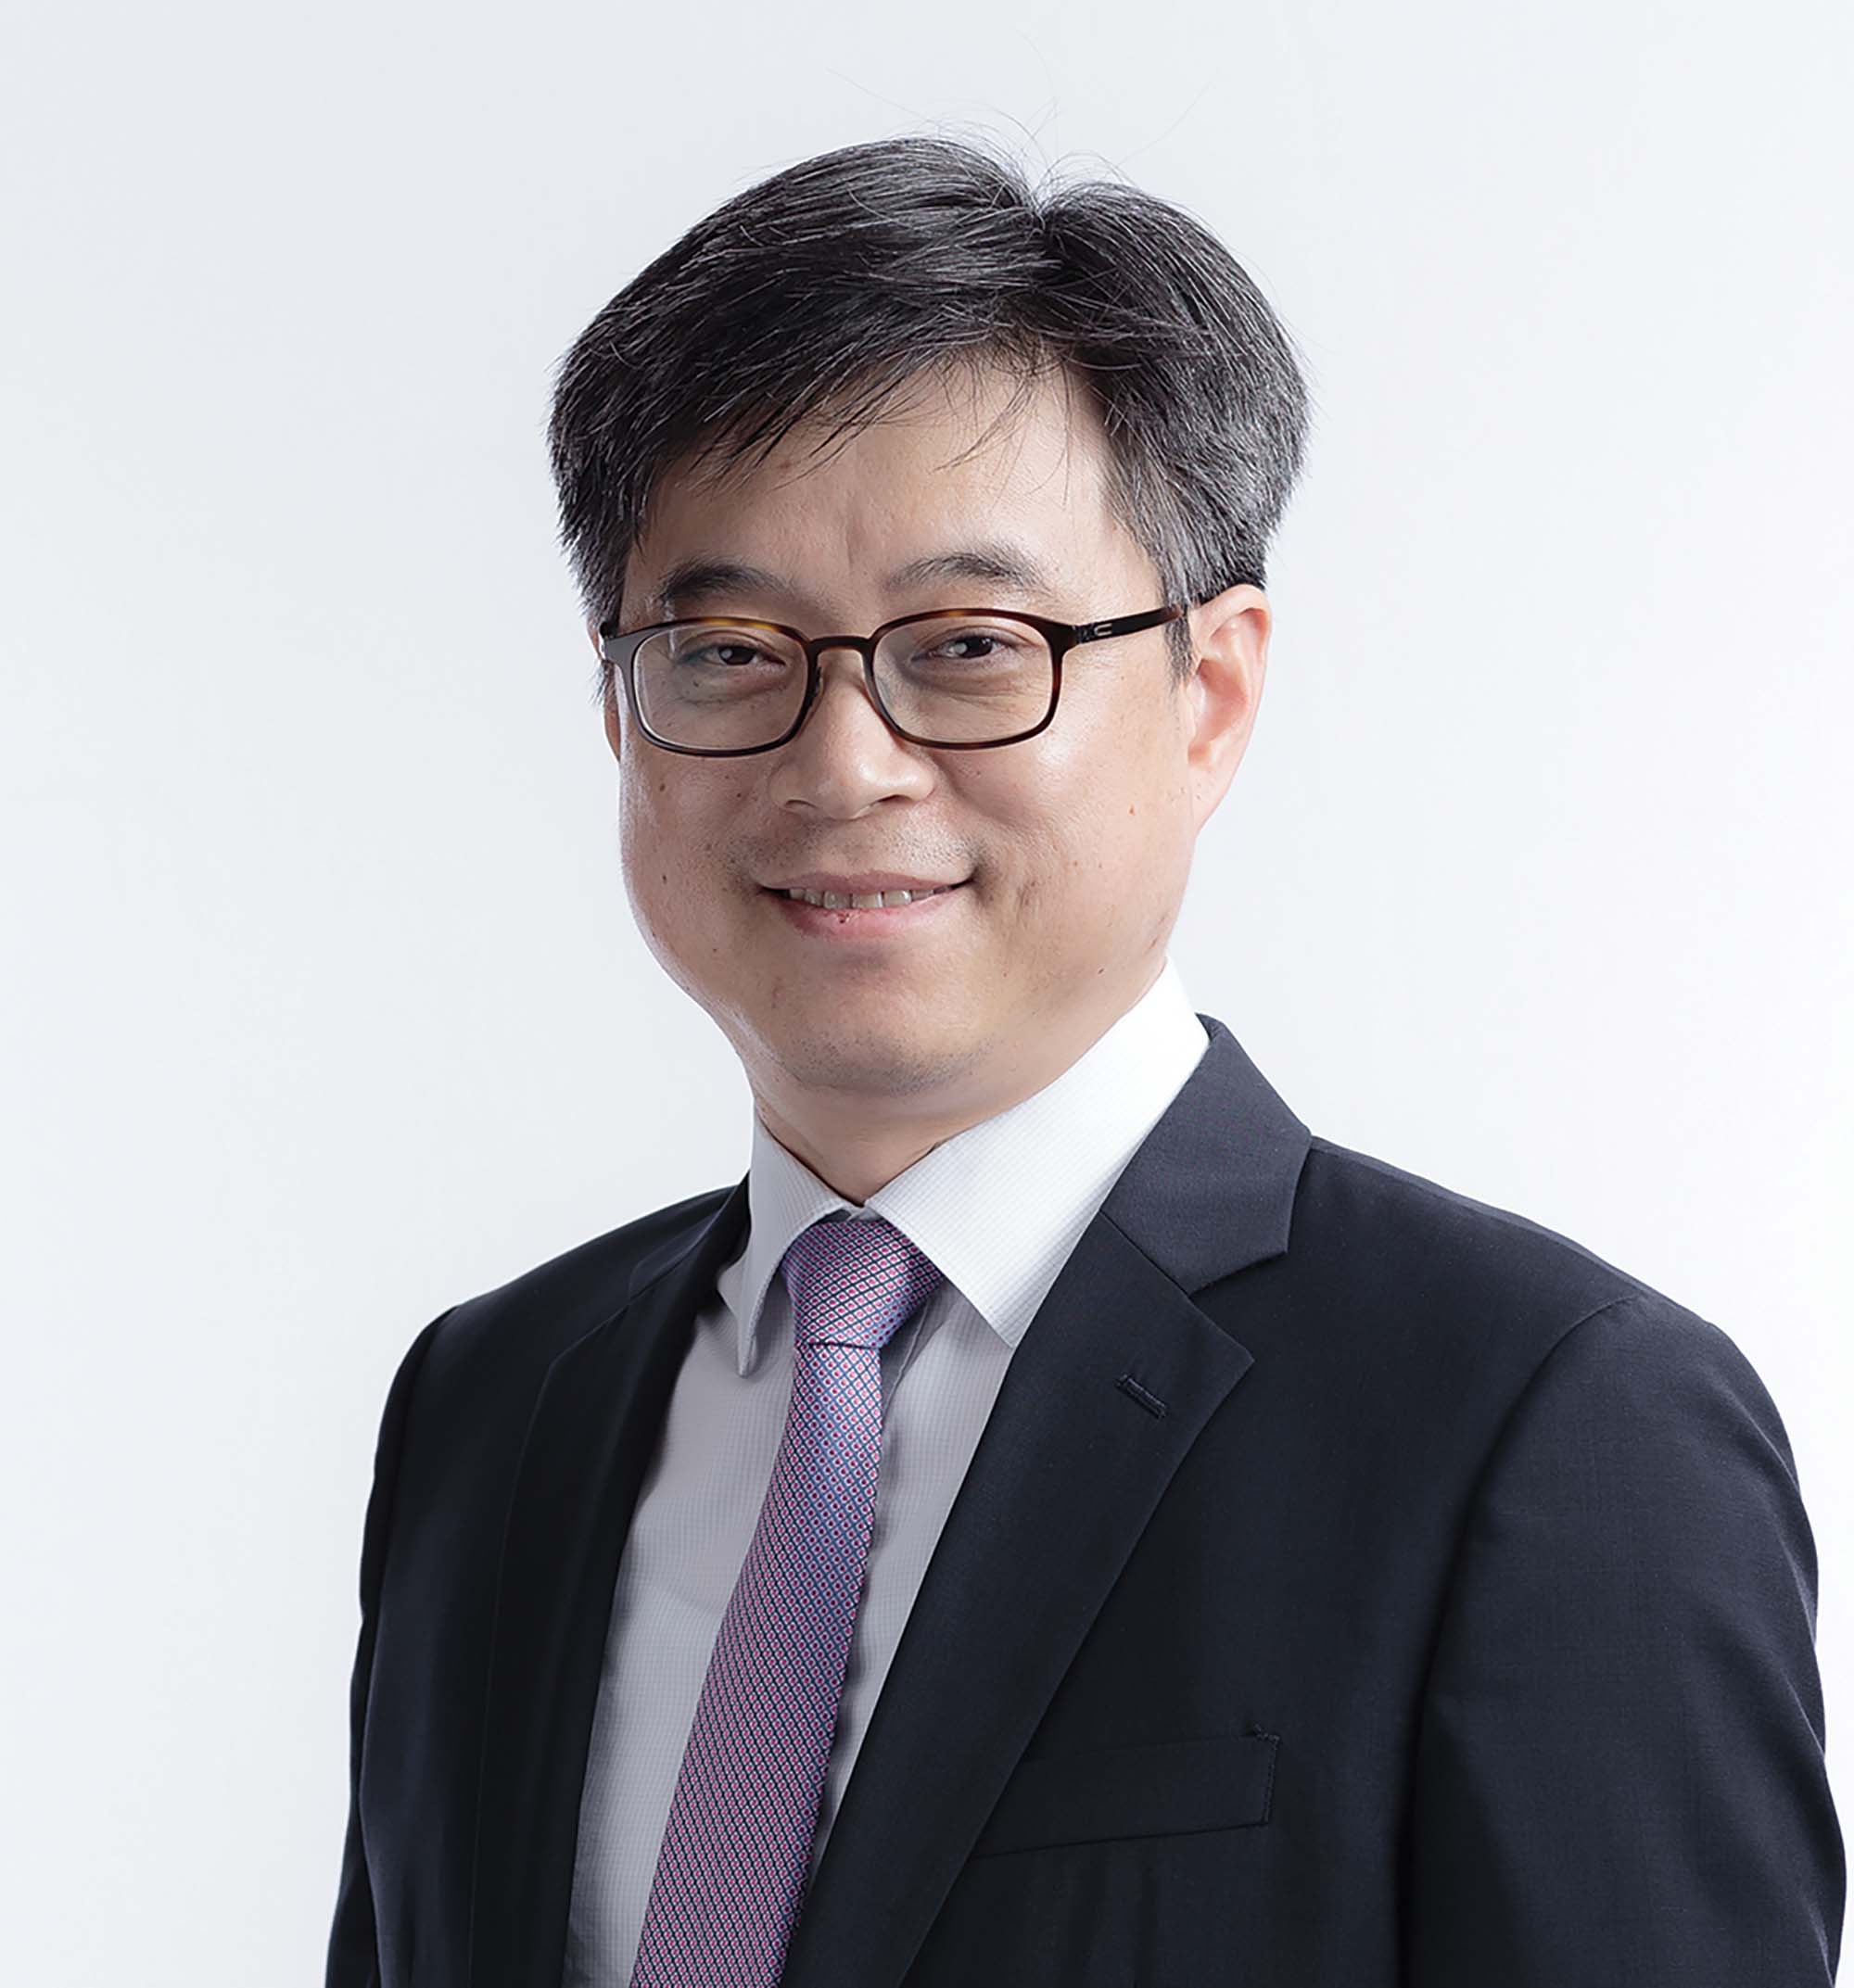 Ông Luke Hong, Trưởng nhóm và Chuyên gia kinh tế trưởng về Việt Nam thuộc Văn phòng Nghiên cứu kinh tế vĩ mô ASEAN + 3 (AMRO)